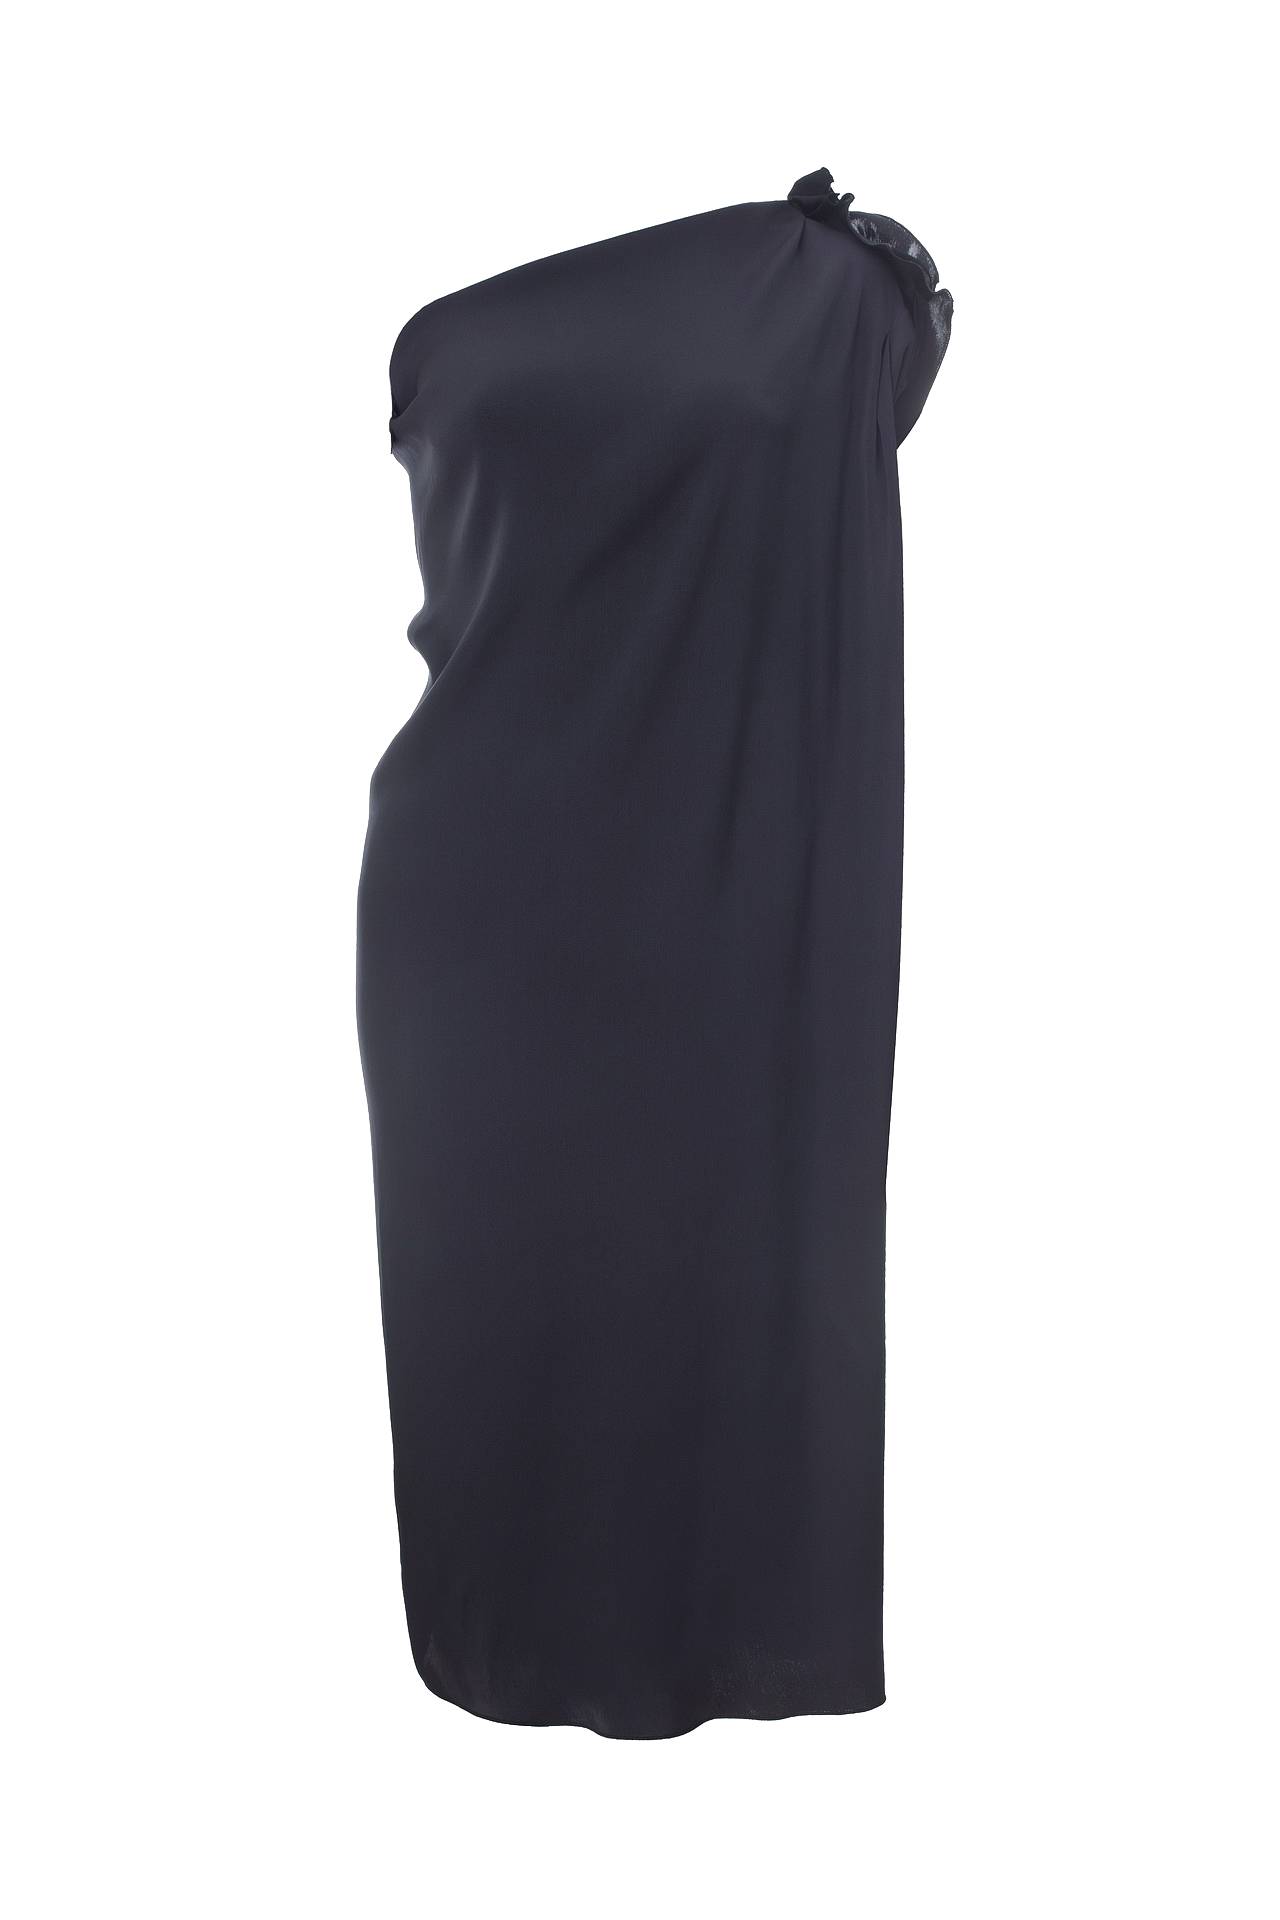 Одежда женская Платье LANVIN (W020622158P8A/16.2). Купить за 39800 руб.